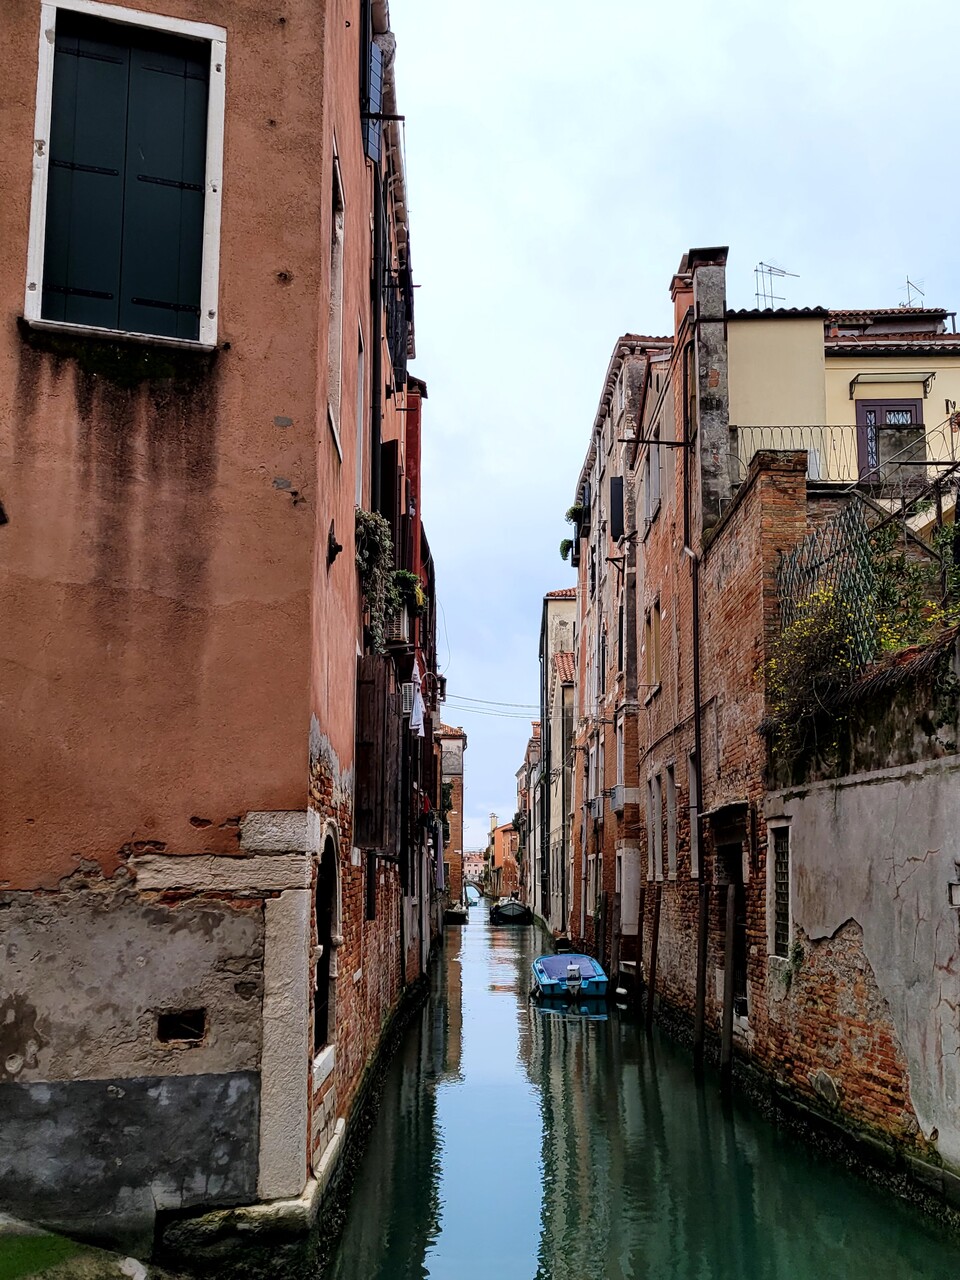 베네치아는 매년 3천만명의 관광객들이 방문하는 곳이다